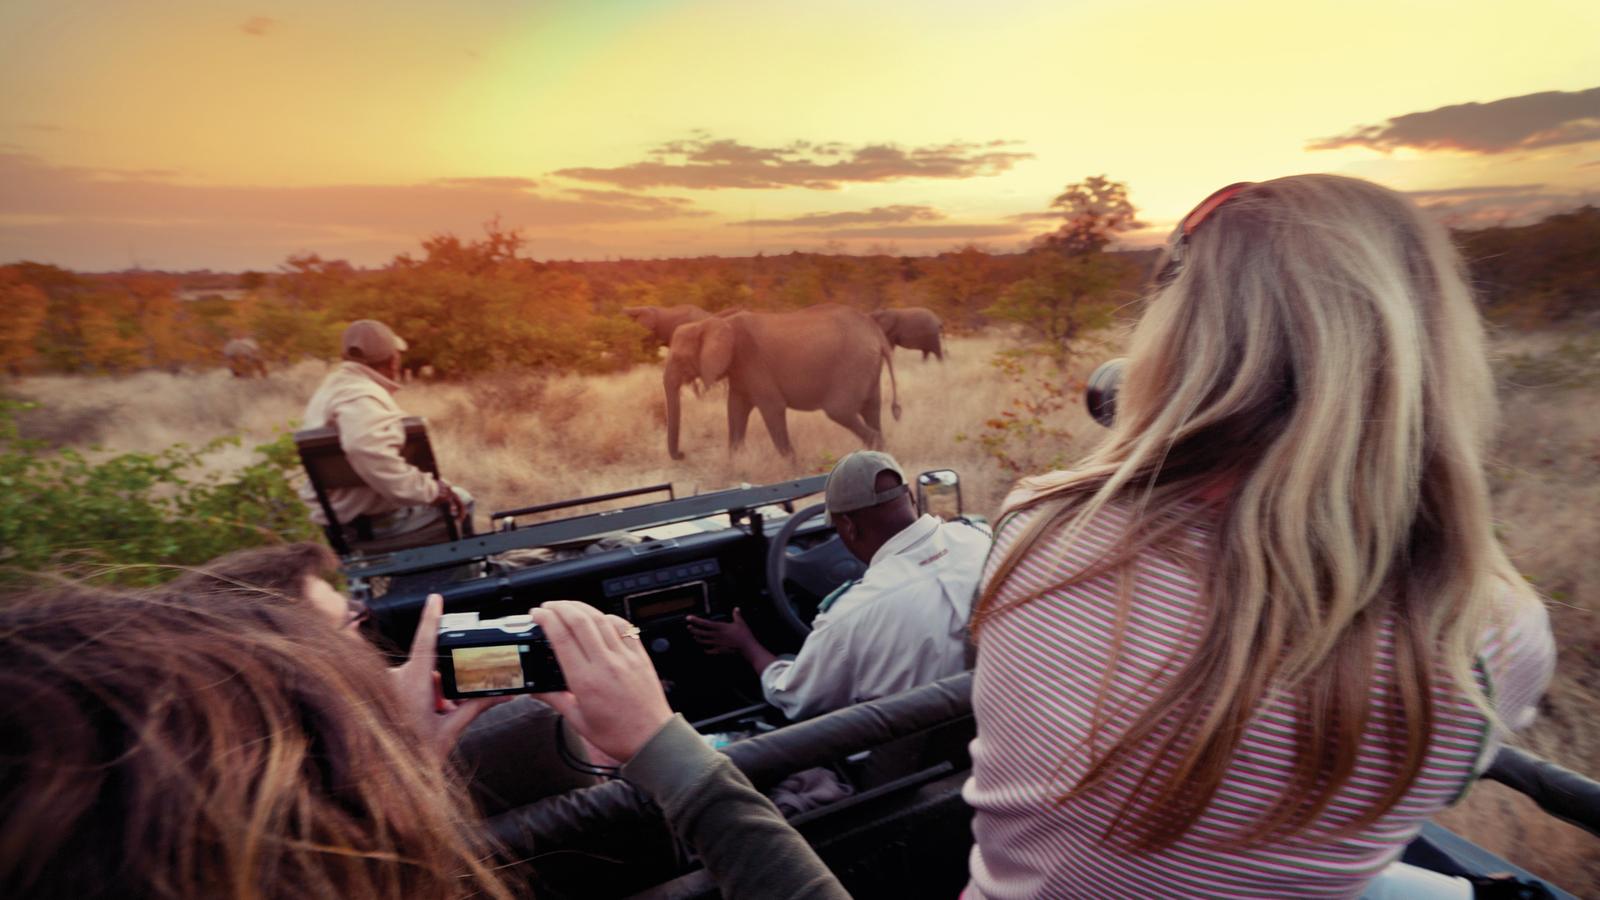 Kruger national park wildlife